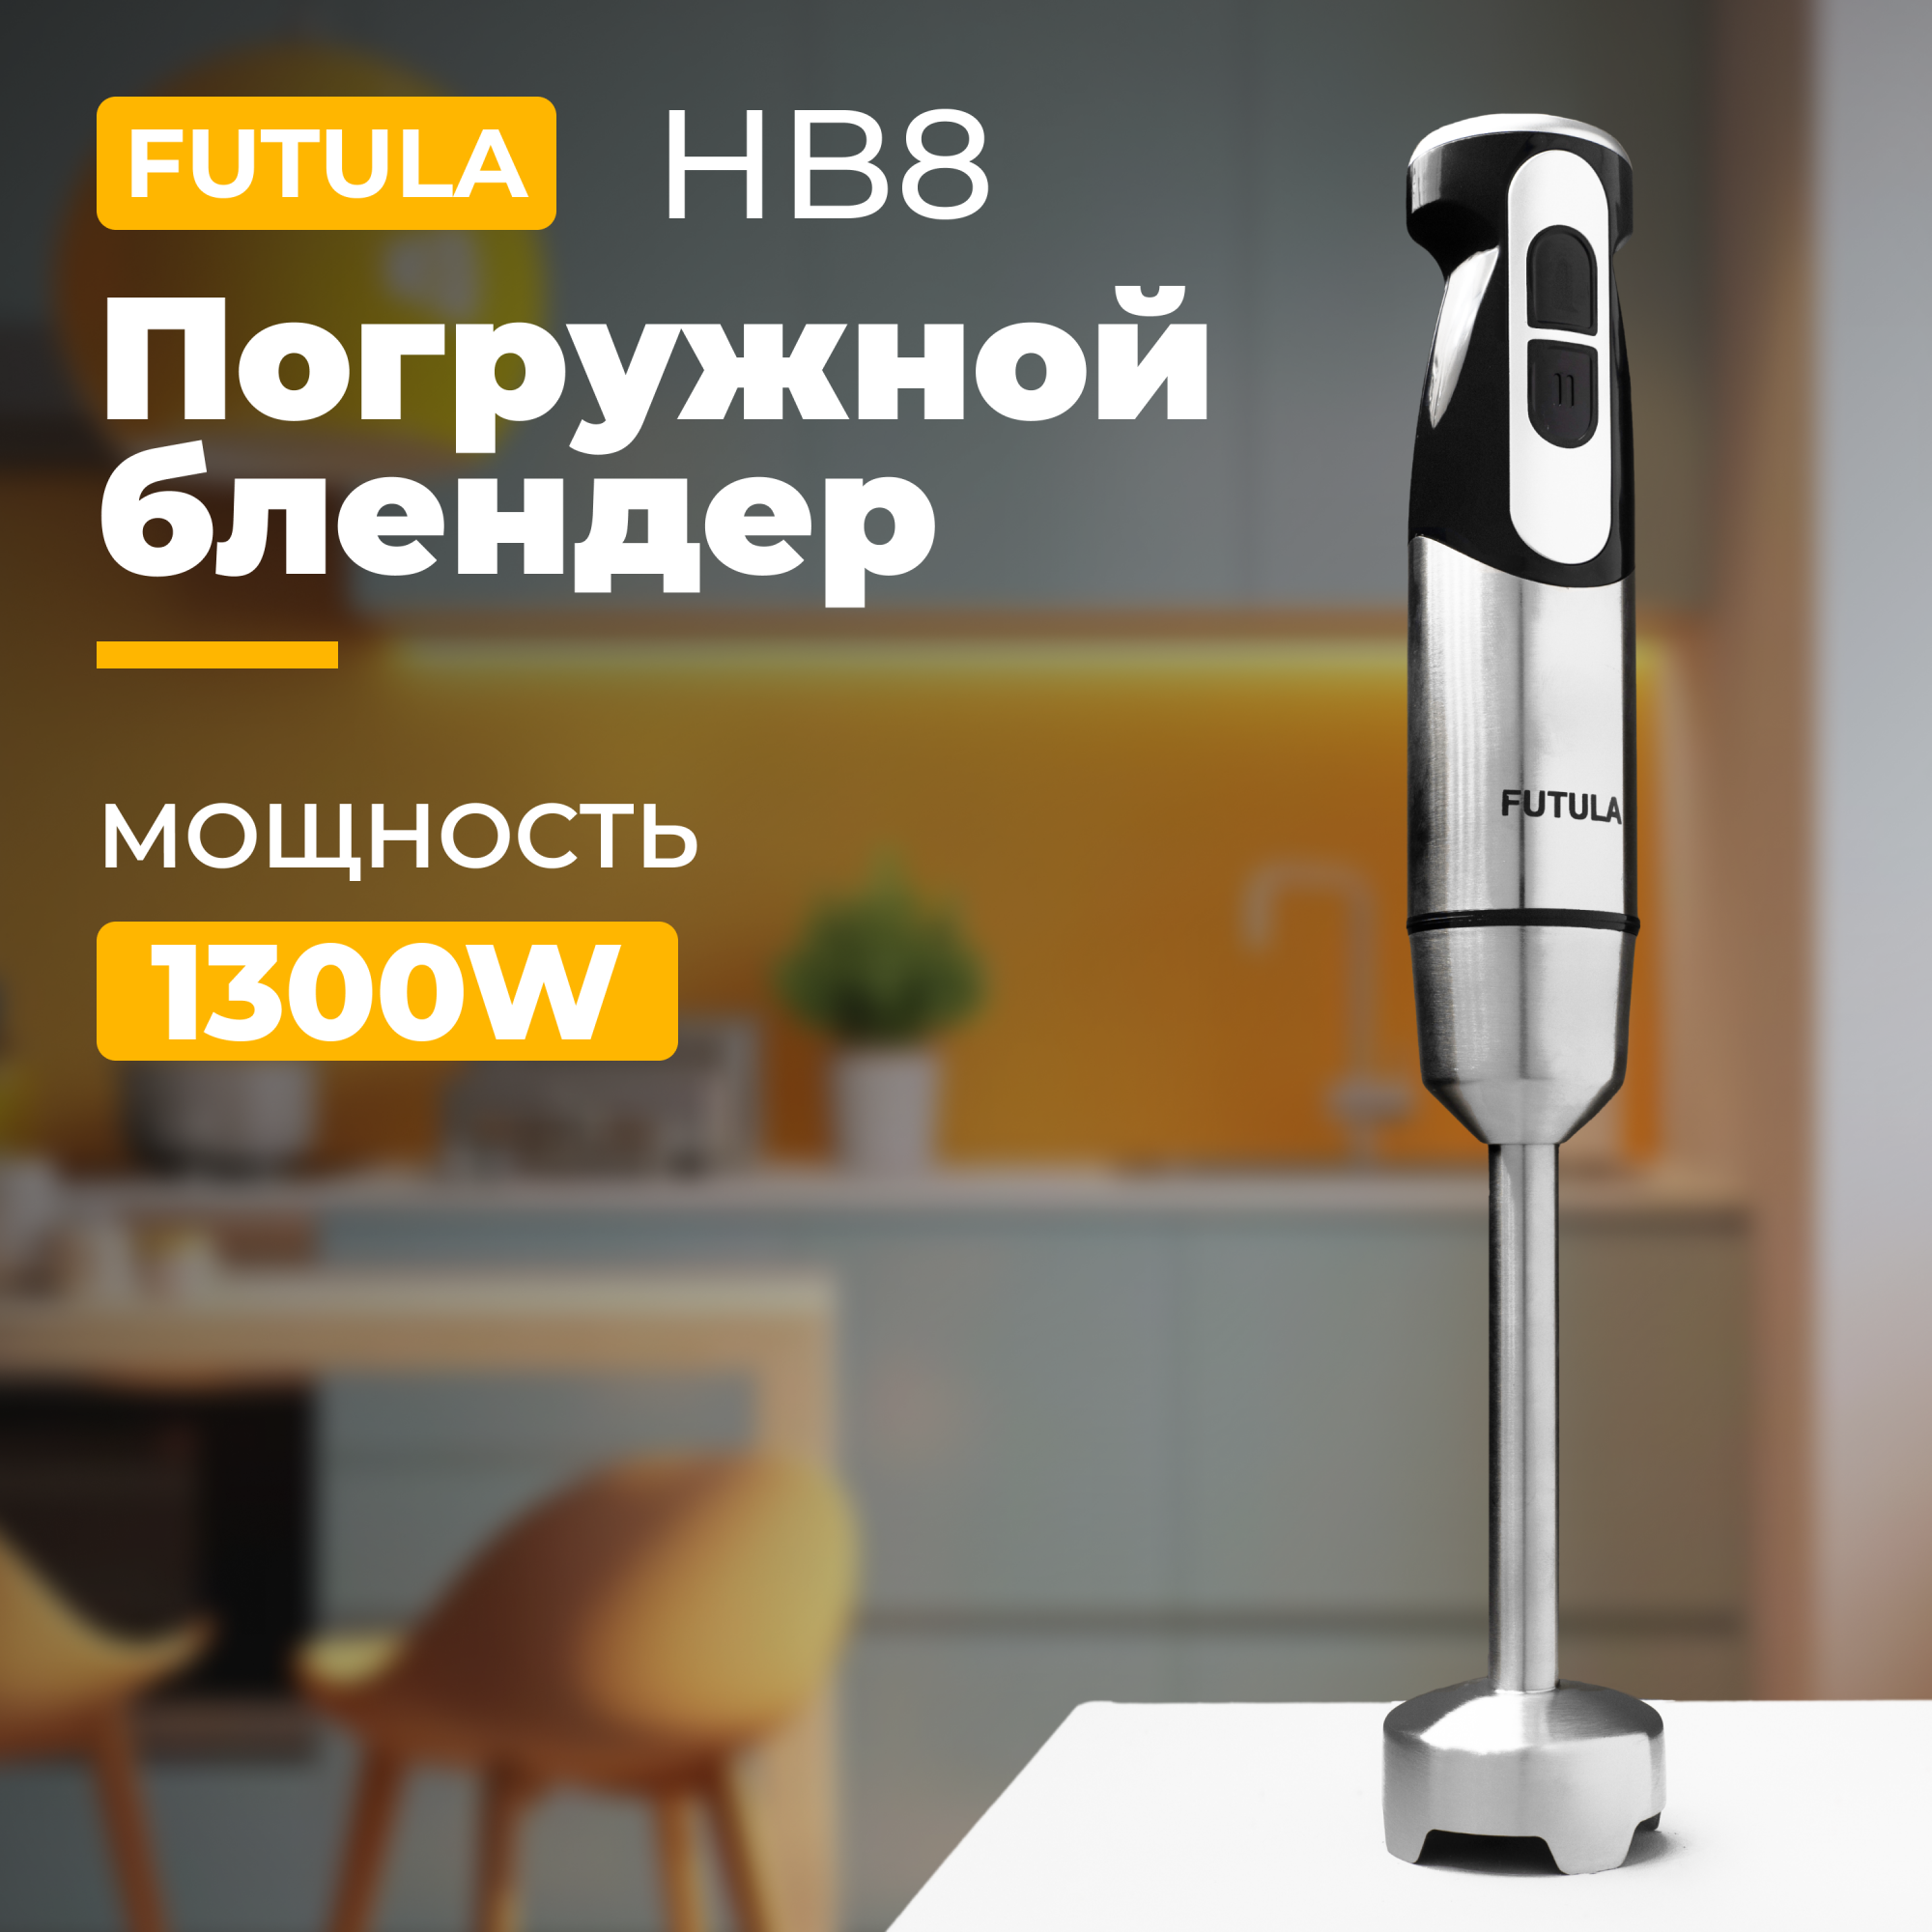 Погружной блендер Futula HB8 серебристый - купить в Питер Маркет - FBS, цена на Мегамаркет